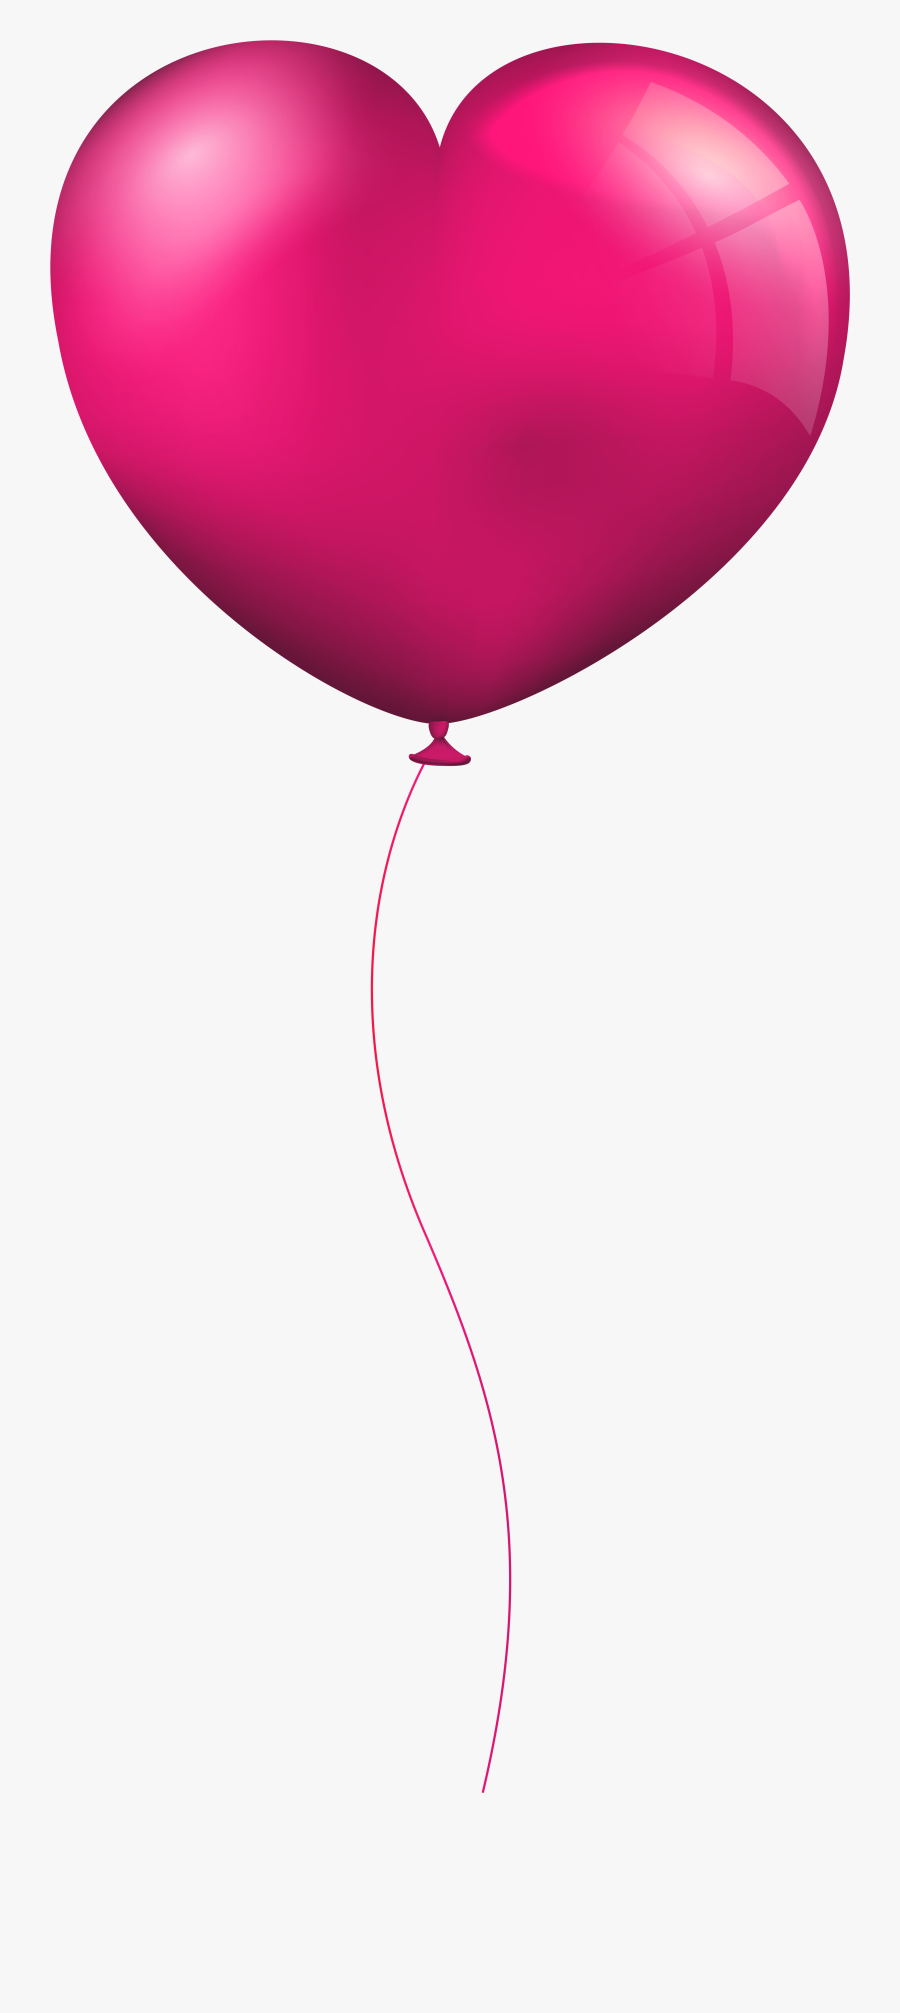 Transparent Balloon Clip Art - Pink Heart Balloon Clipart, Transparent Clipart